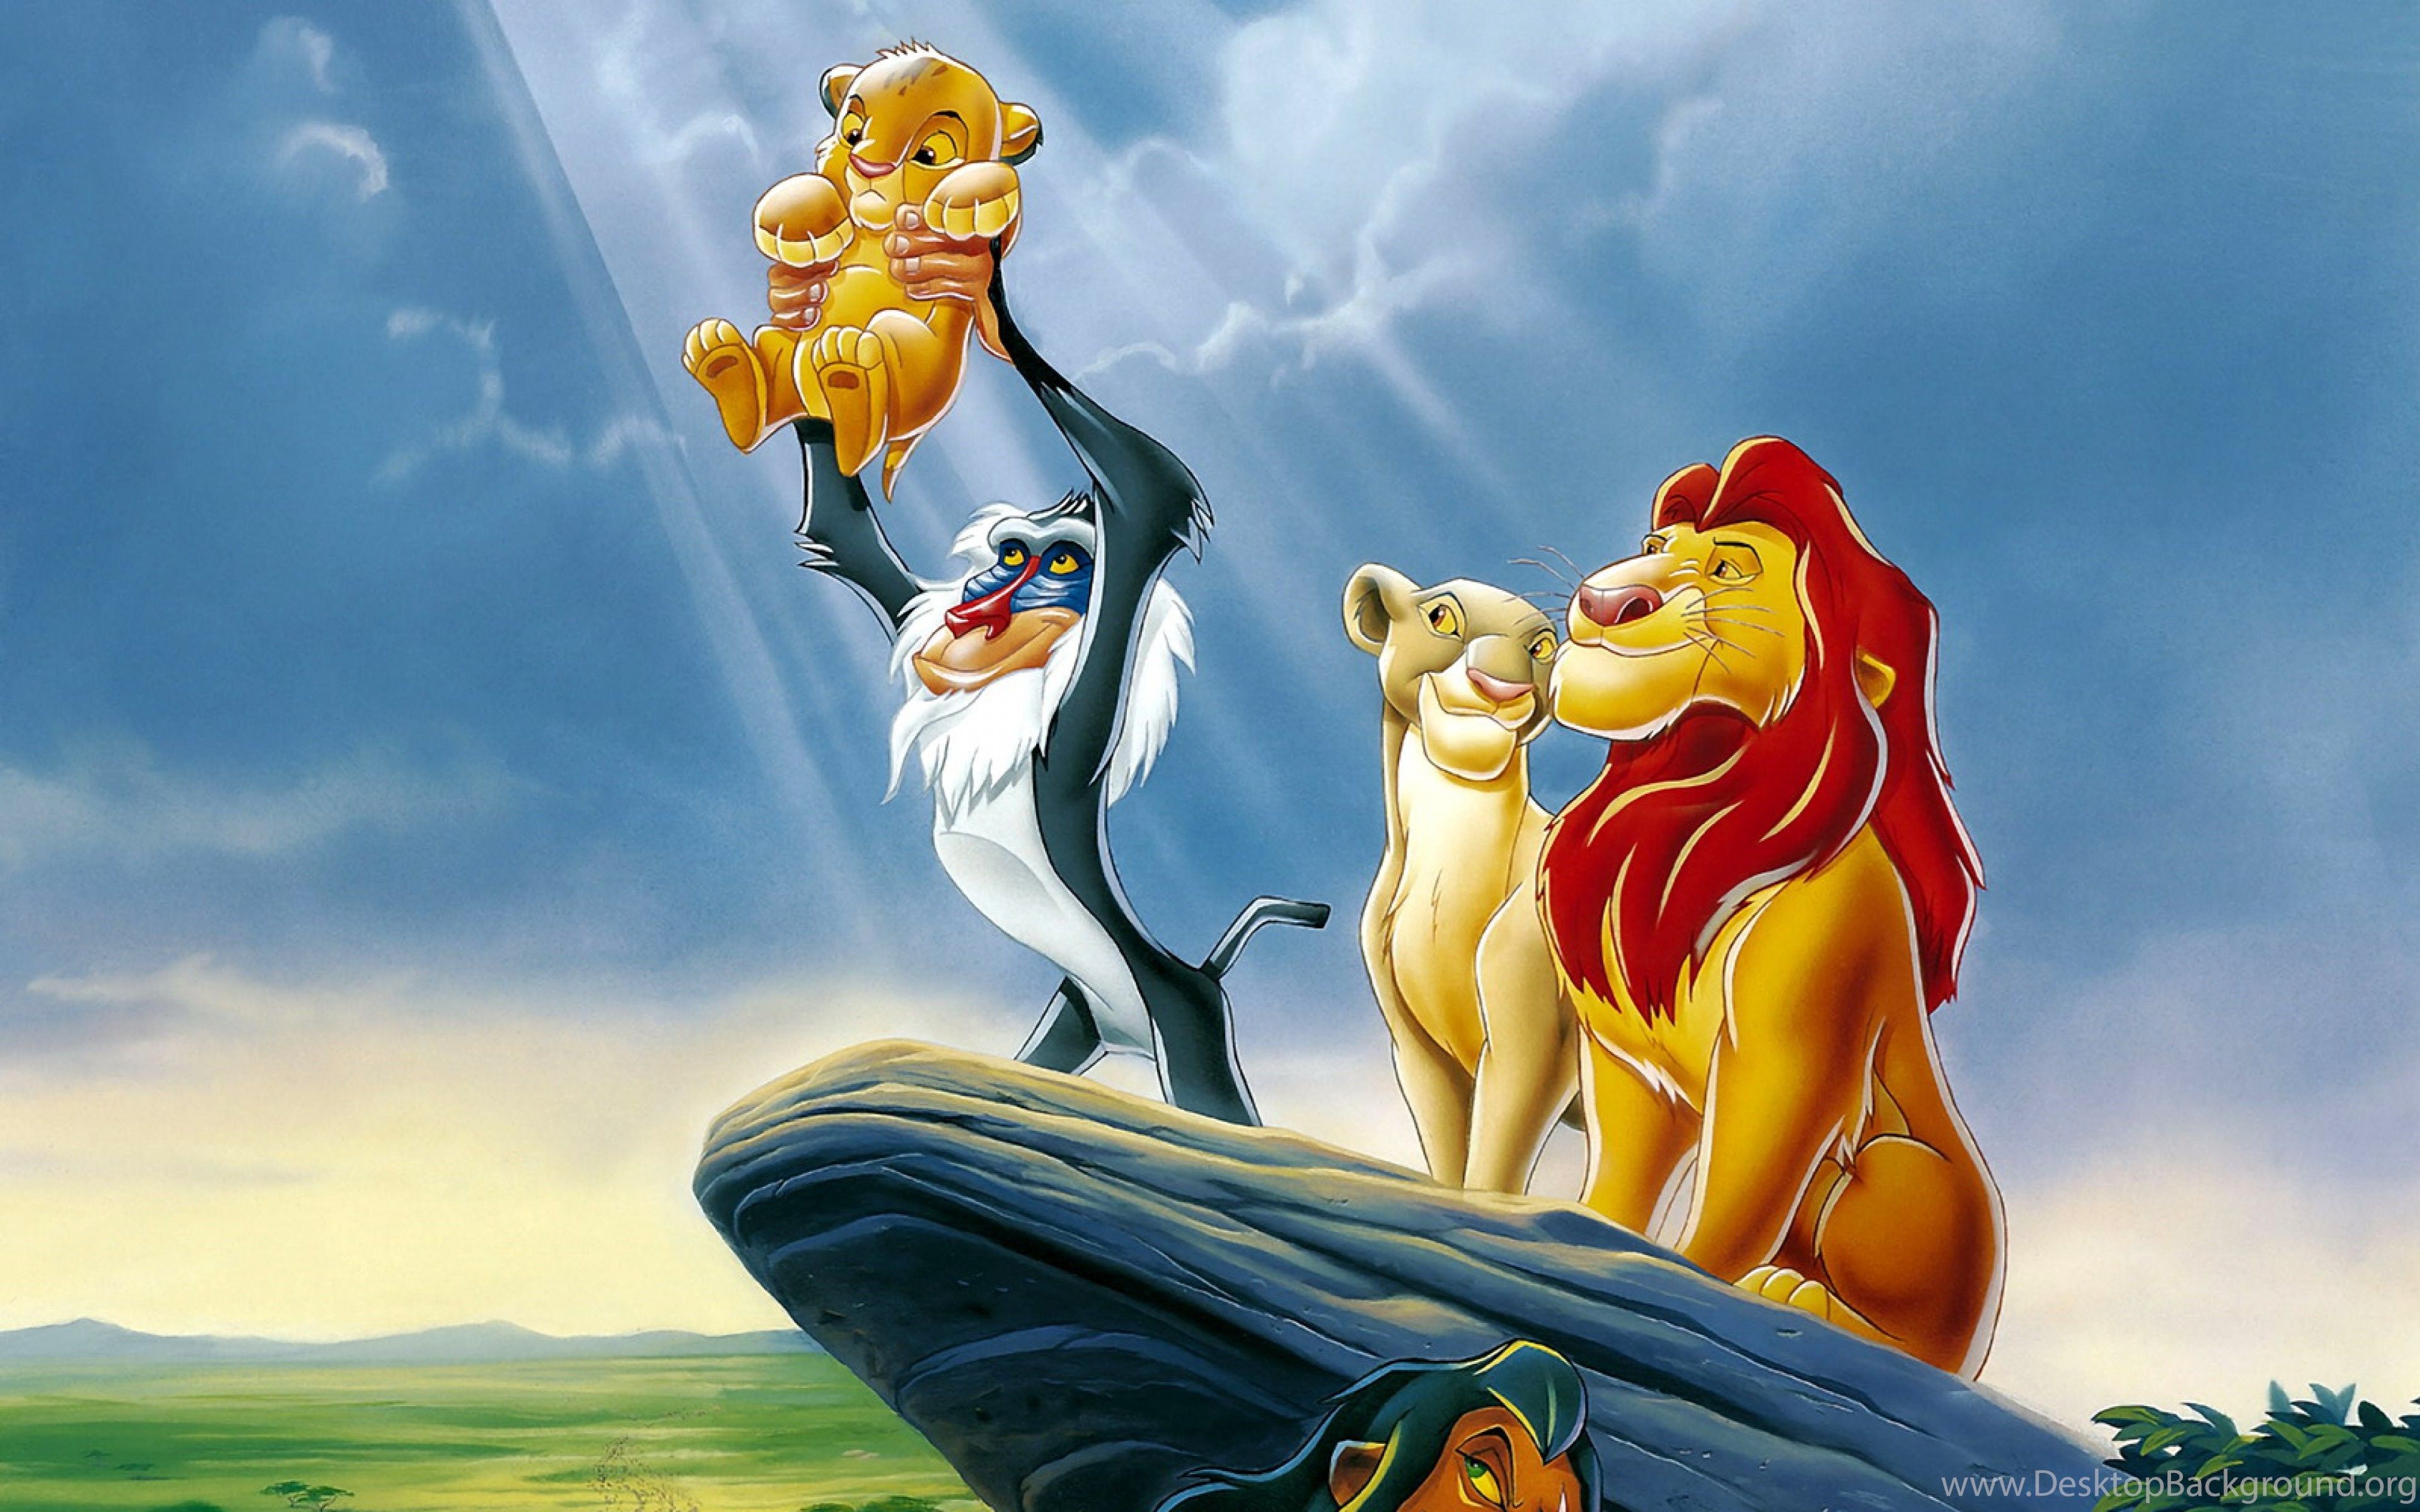 Lion King Wallpaper HD